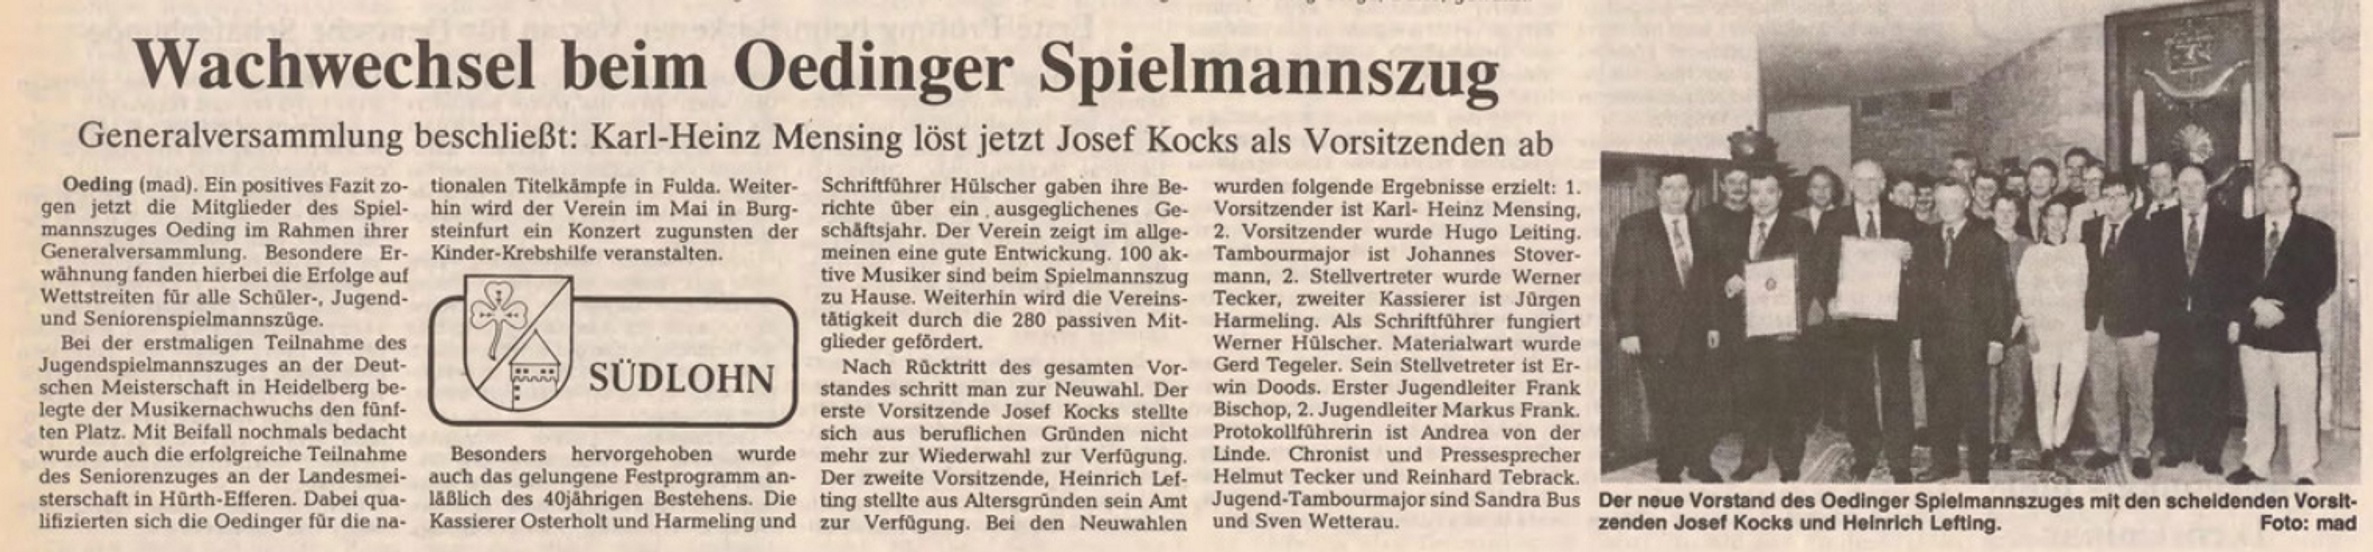 Wachwechsel beim Oedinger Spielmannszug | BZ 17 03 1992